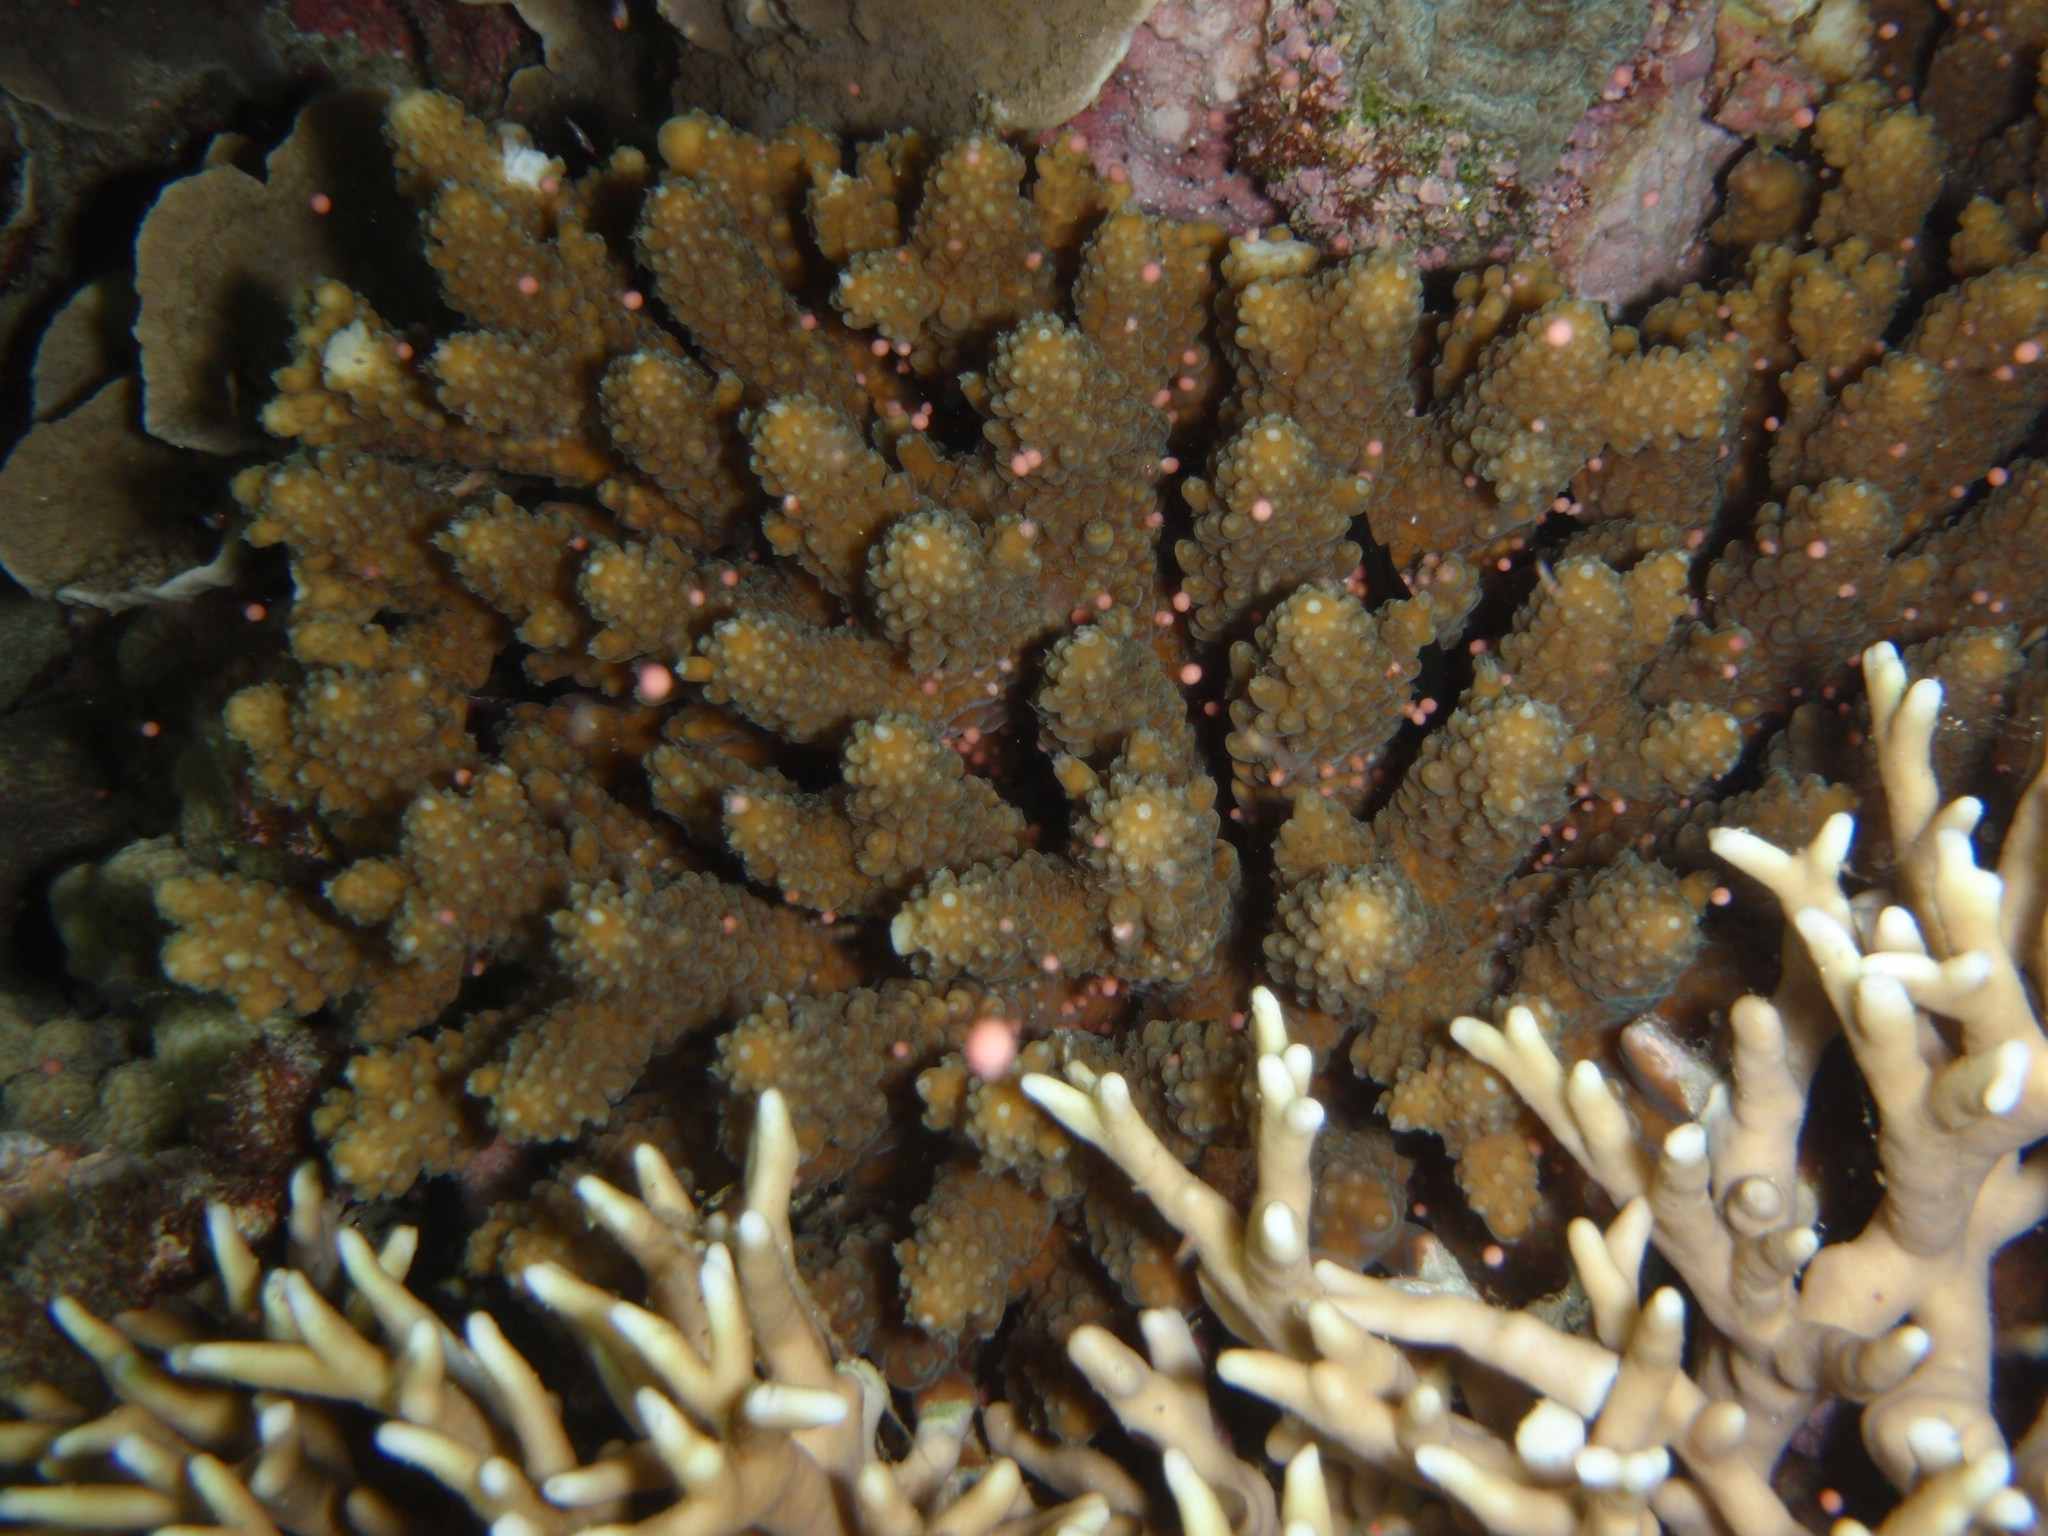 垦丁珊瑚每年在今天妈祖生前后夜晚同步释放精卵束，美如海底星空，粉红色的精卵束在海中漂浮，又如夏日雪，吸引潜客南下朝圣。图／民众提供